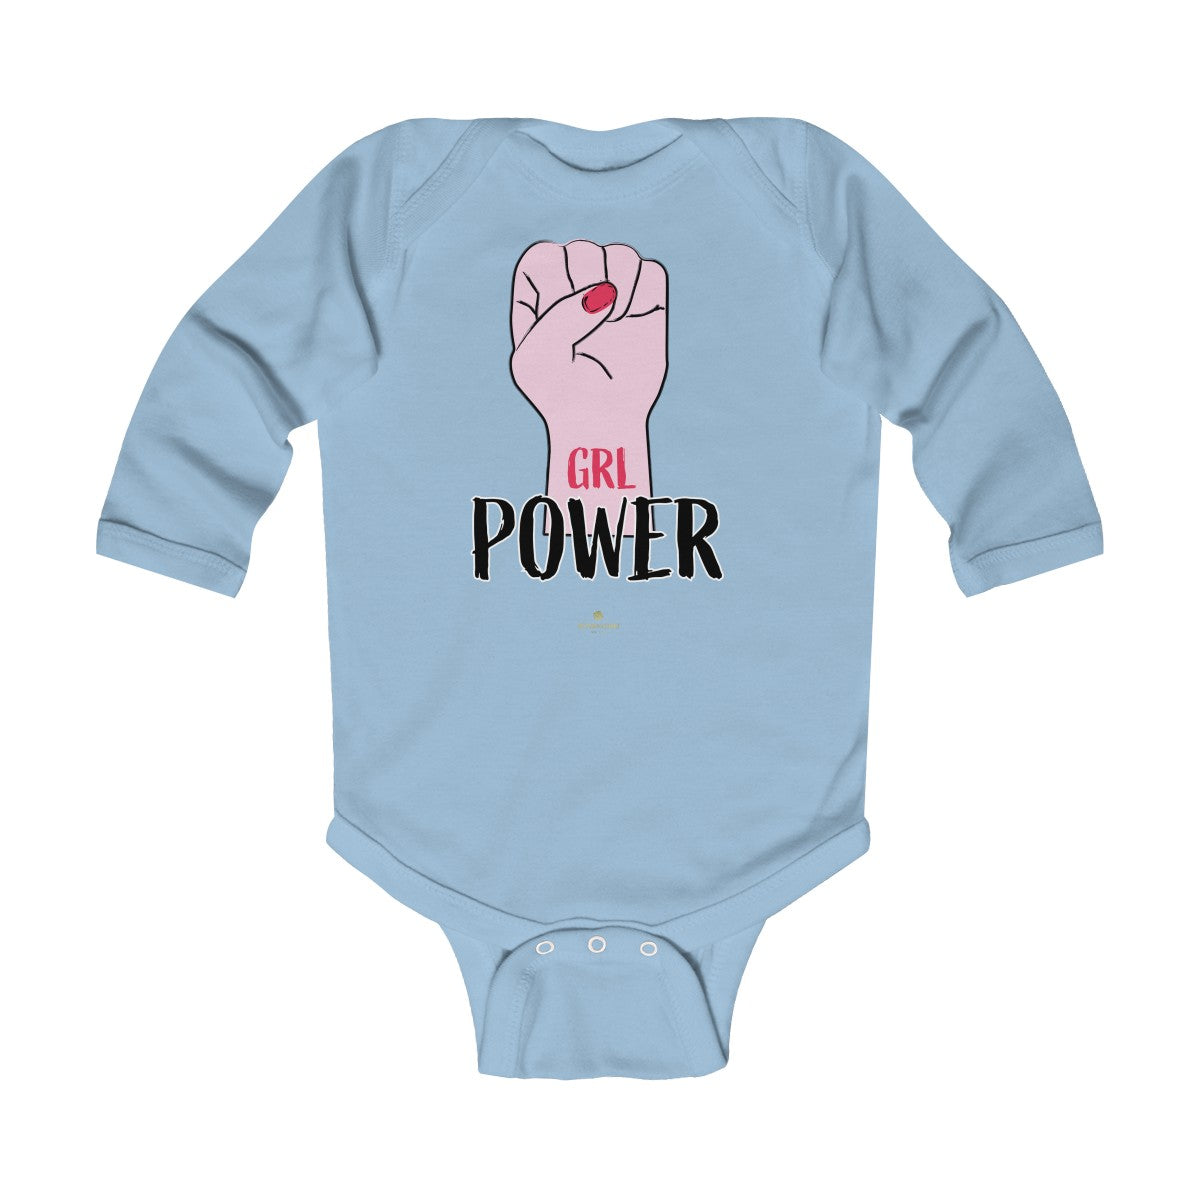 Girl Power Baby Girls Premium Infant Kids Long Sleeve Bodysuit Clothes - Made in USA-Infant Long Sleeve Bodysuit-Light Blue-18M-Heidi Kimura Art LLC